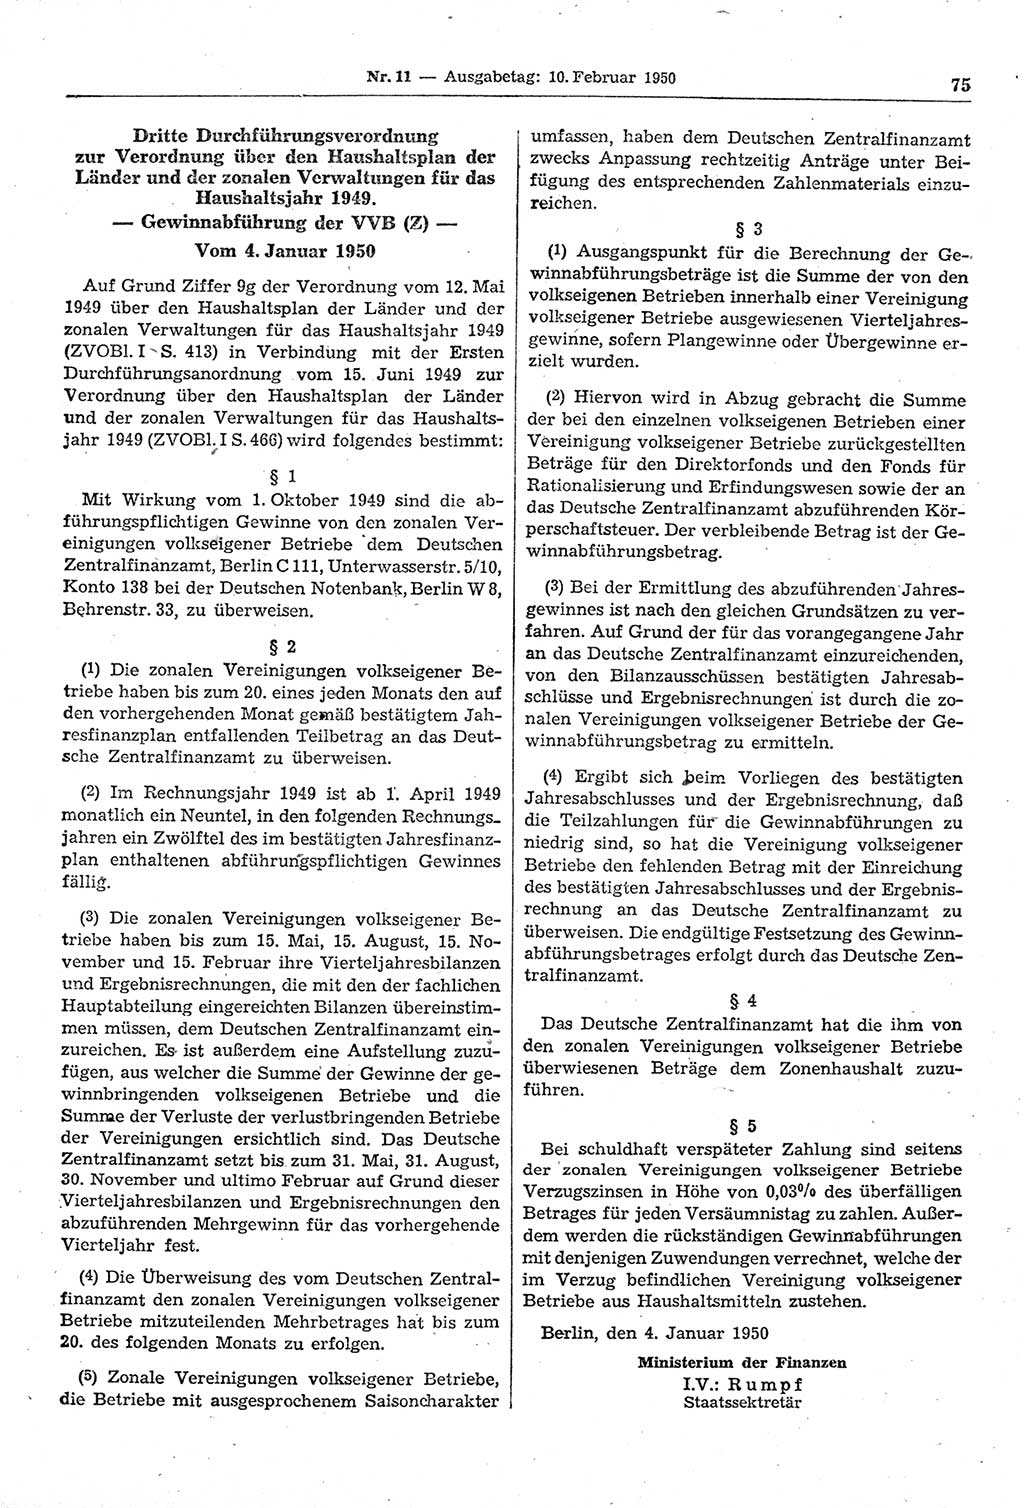 Gesetzblatt (GBl.) der Deutschen Demokratischen Republik (DDR) 1950, Seite 75 (GBl. DDR 1950, S. 75)